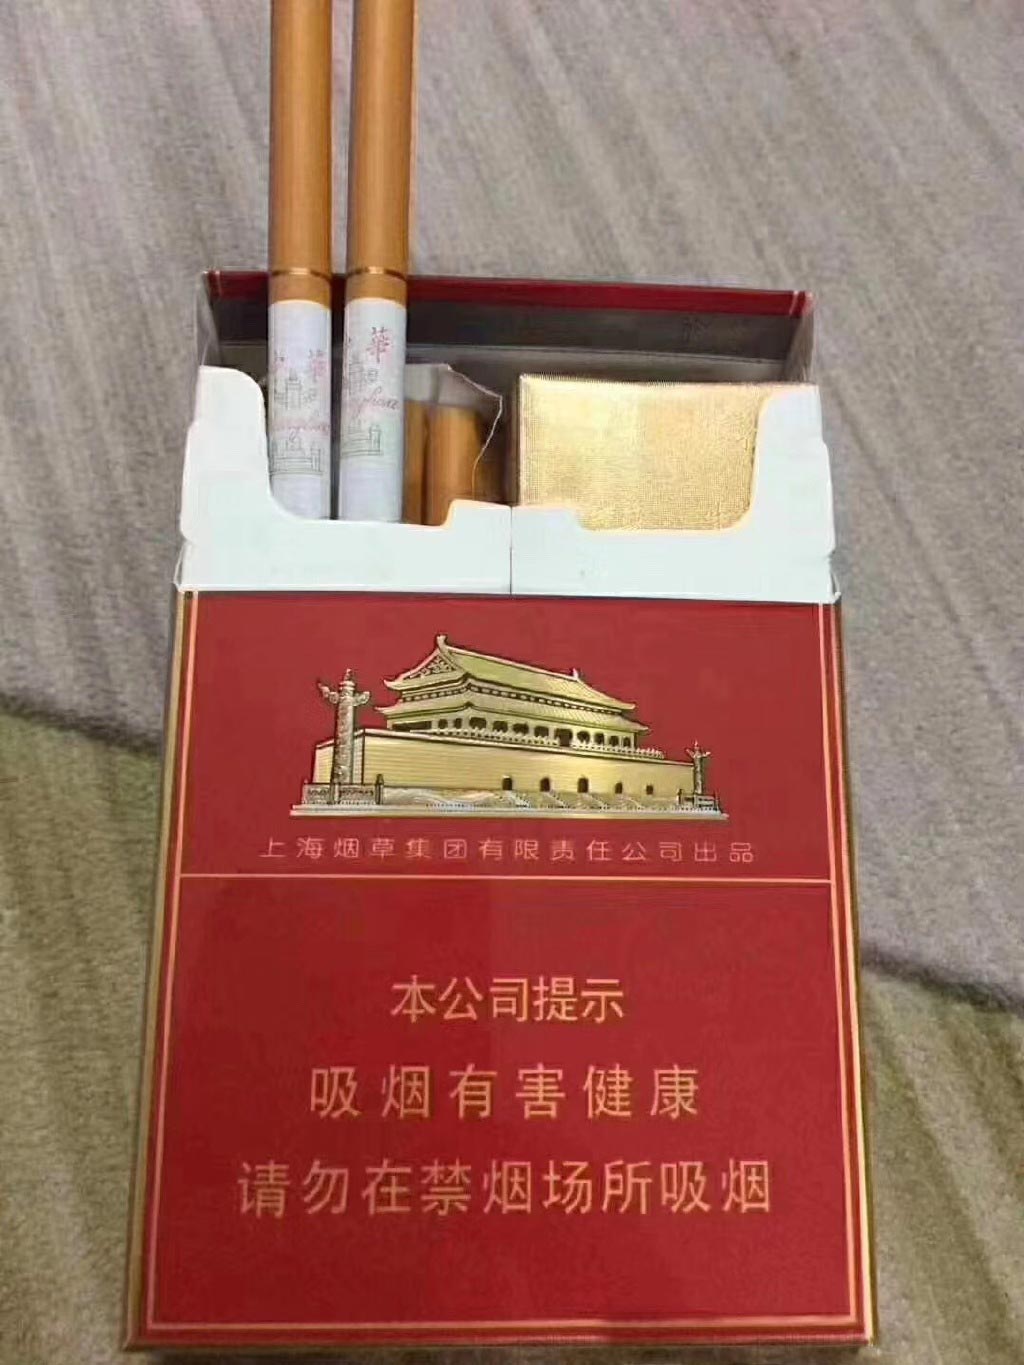 广东免税香烟货到付款-4一8元香烟的批发处厂家直销